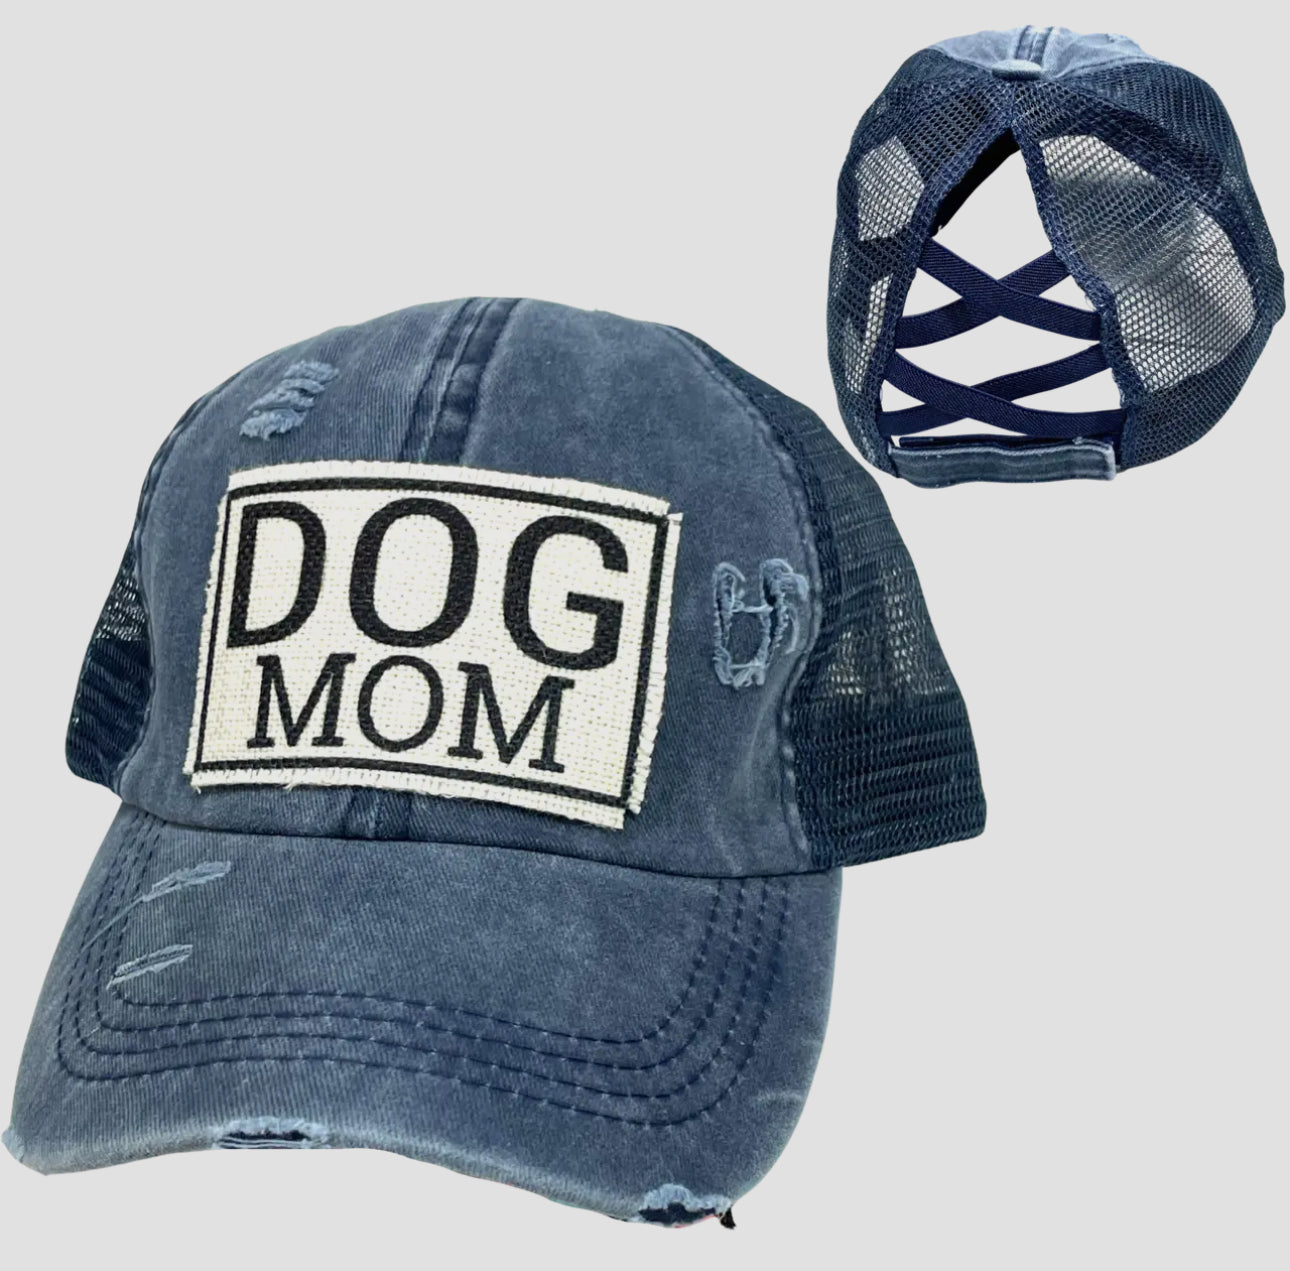 Dog mom ponytail hat